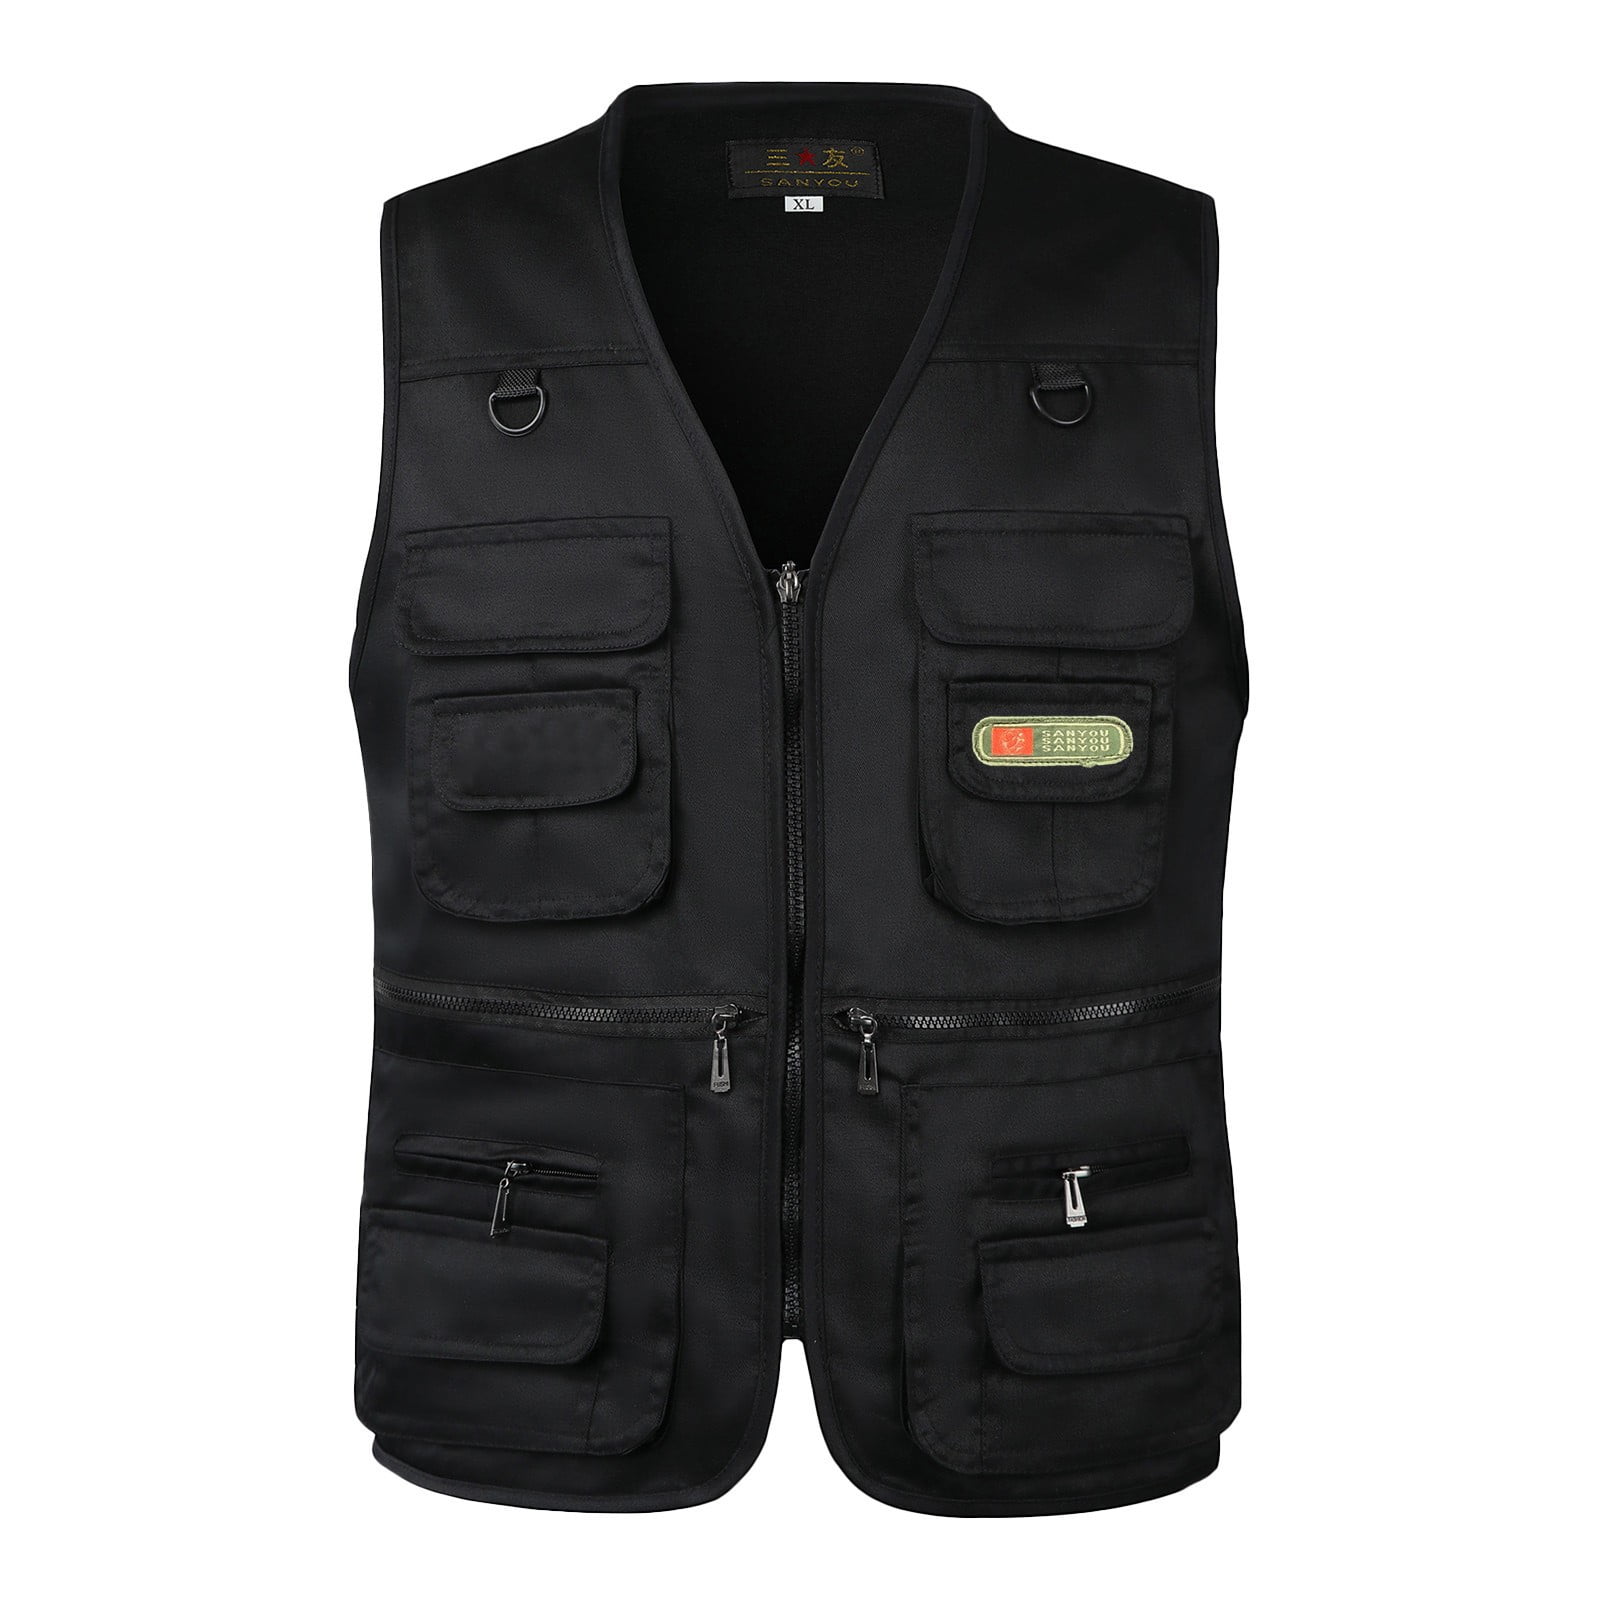 Odeerbi Jackets Vest Sets for Men Multi-Pocketed Photography Denim ...